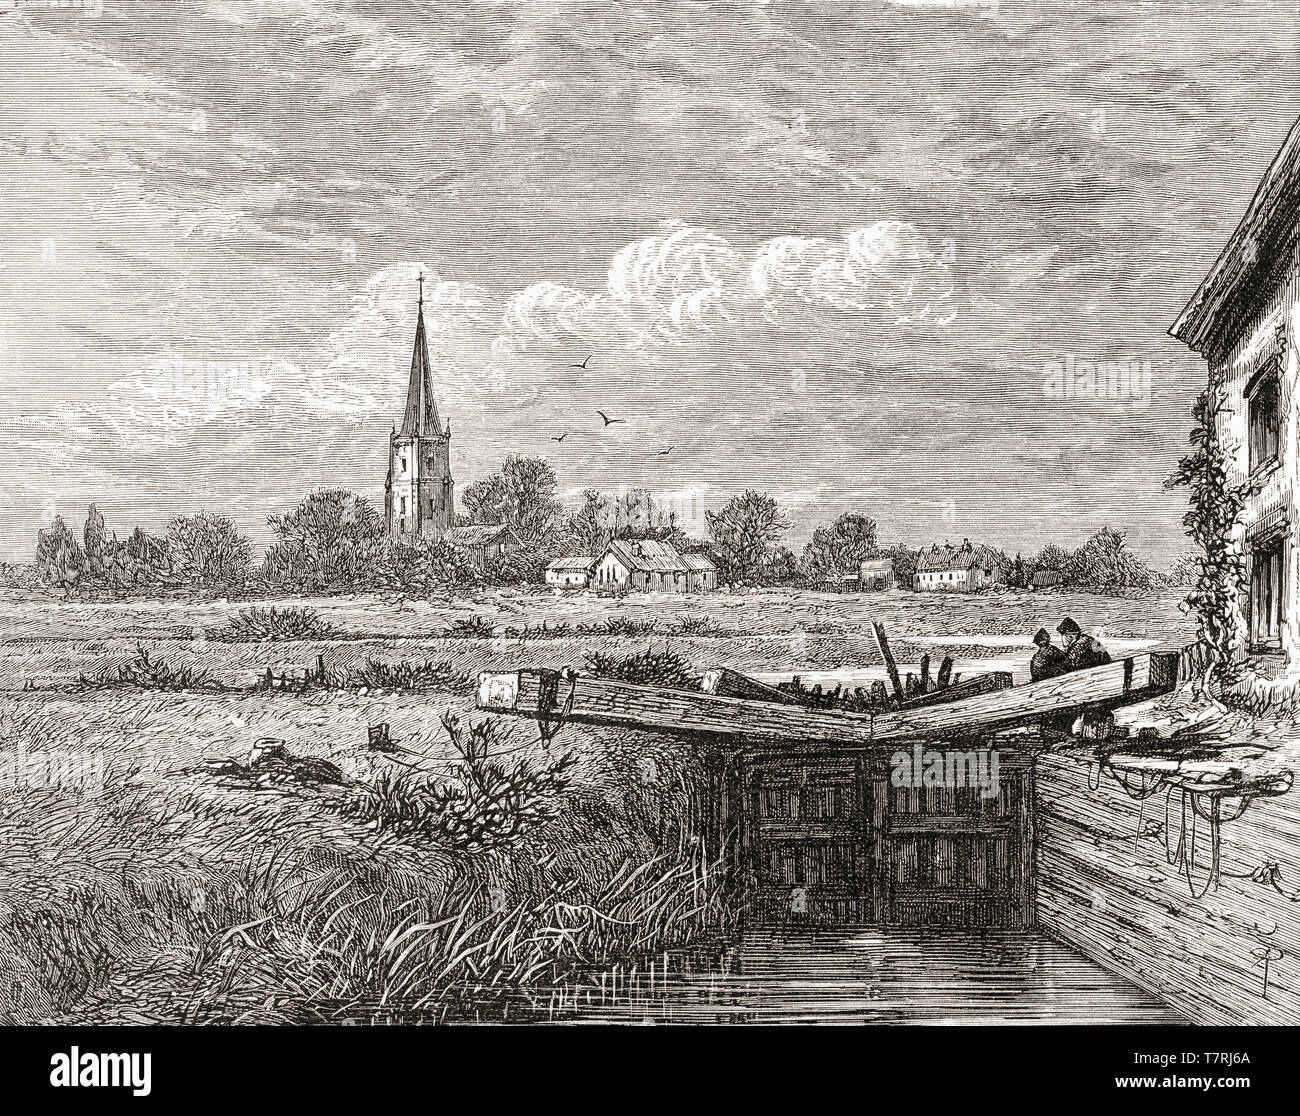 Lechlade Lechlade o-on-Thames, il Costwolds, Gloucestershire, Inghilterra, visto qui nel XIX secolo. Il punto più alto in corrispondenza del quale il fiume Tamigi è navigabile. In inglese da immagini, pubblicato 1890. Foto Stock